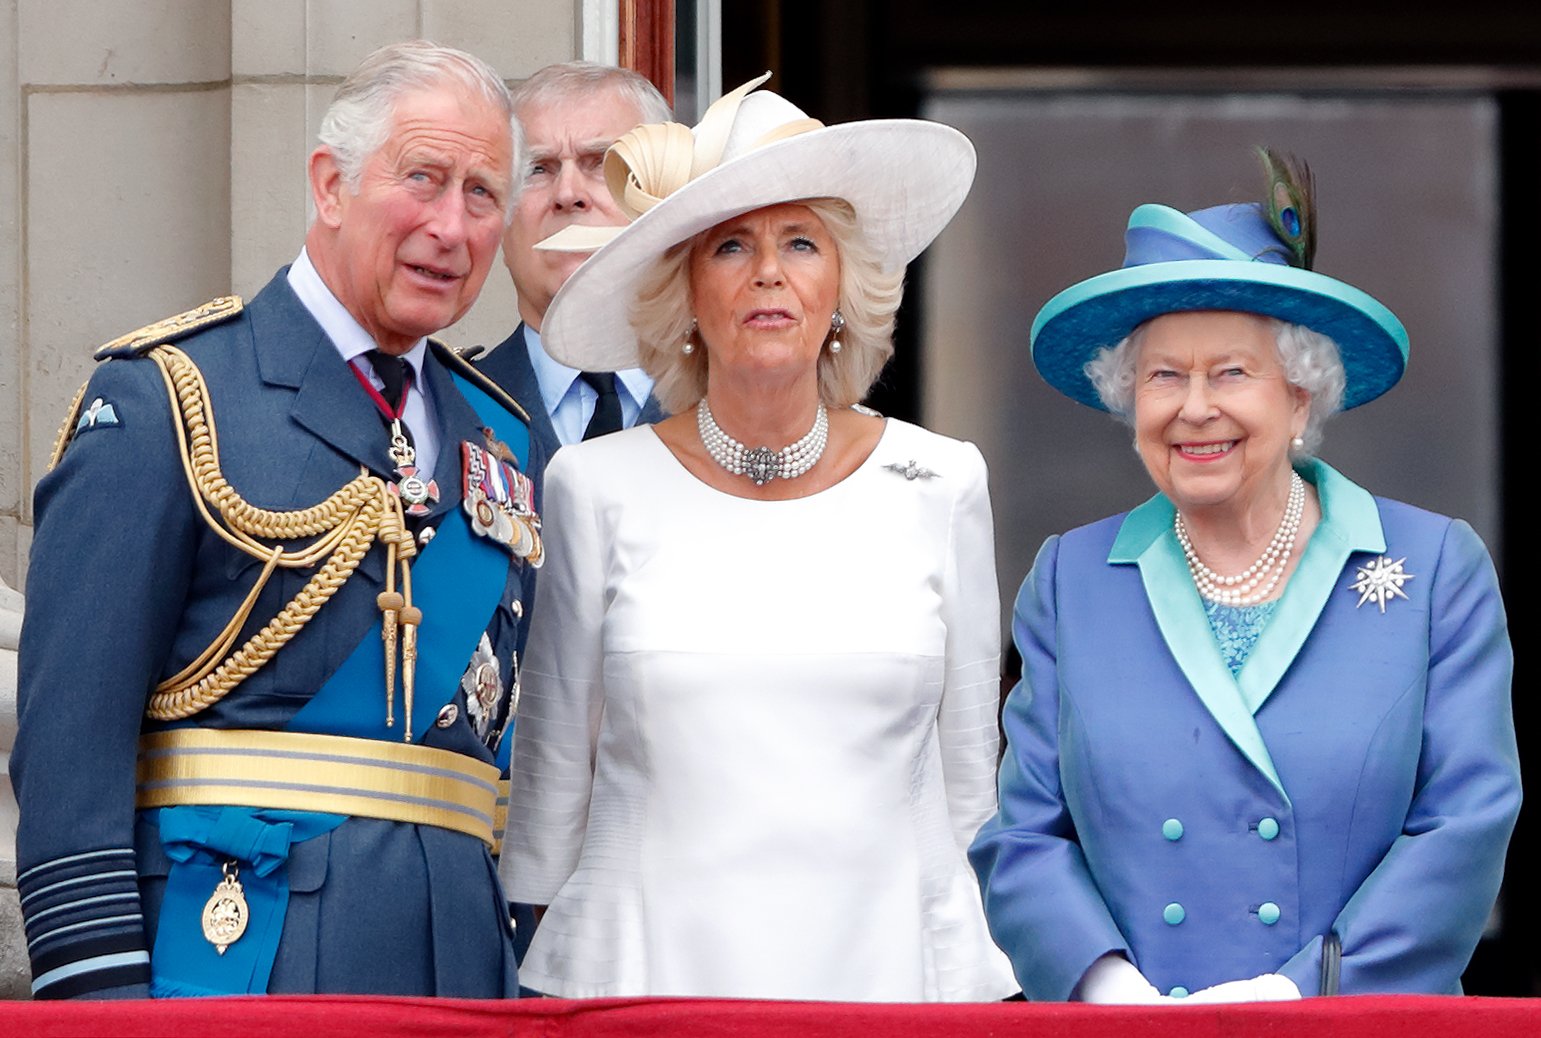 Le prince Charles, Camilla Parker-Bowles et la reine Elizabeth II assistent à un défilé aérien pour marquer le centenaire de la Royal Air Force depuis le balcon du palais de Buckingham, le 10 juillet 2018 à Londres, en Angleterre | Source : Getty Images